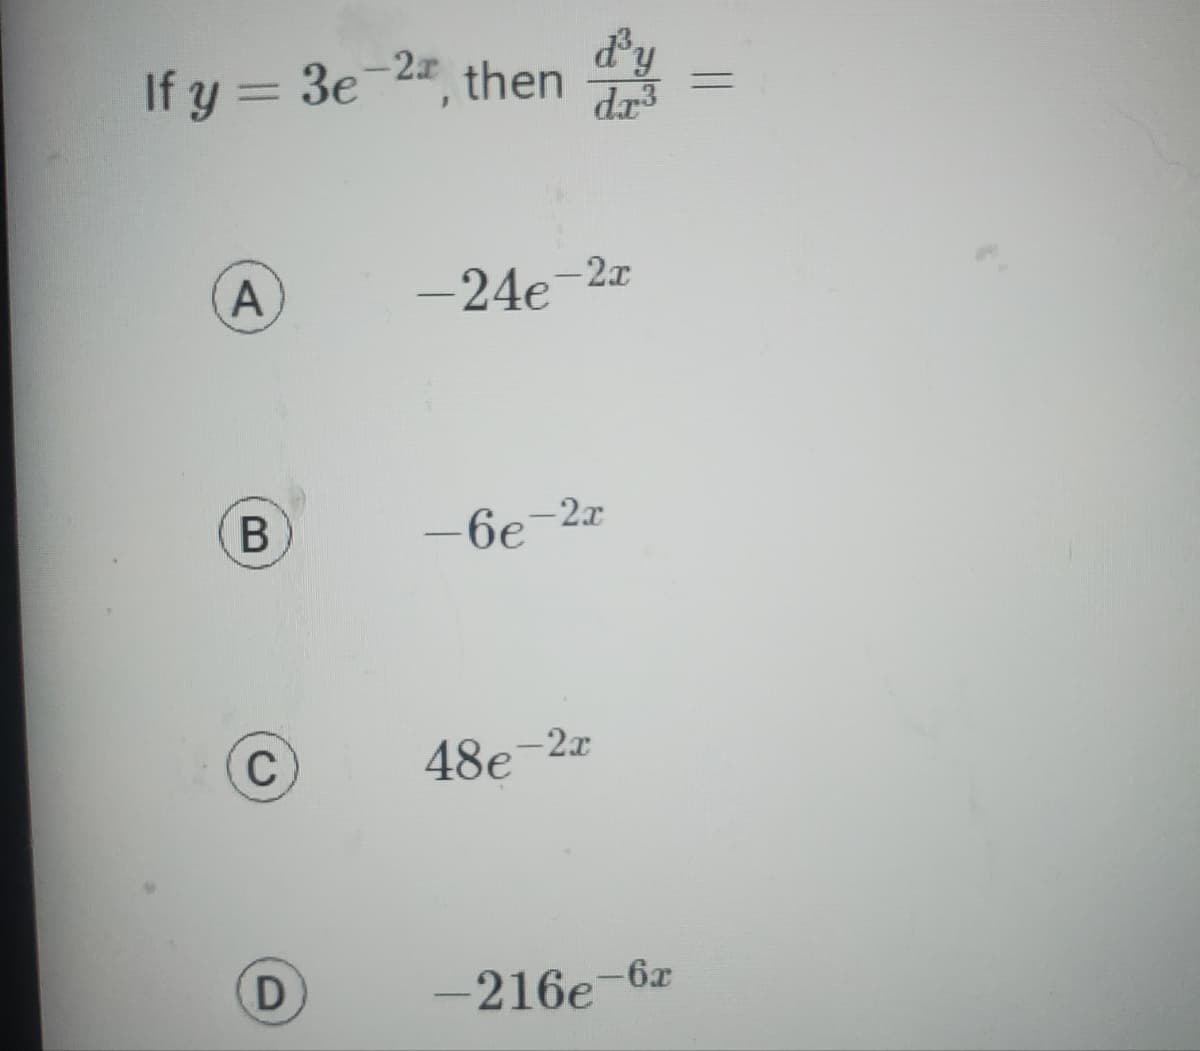 If y = 3e-22, then
A
B
C
D
dy
-24e-2x
48e
dr³
-6e-2x
-2x
-216e-6x